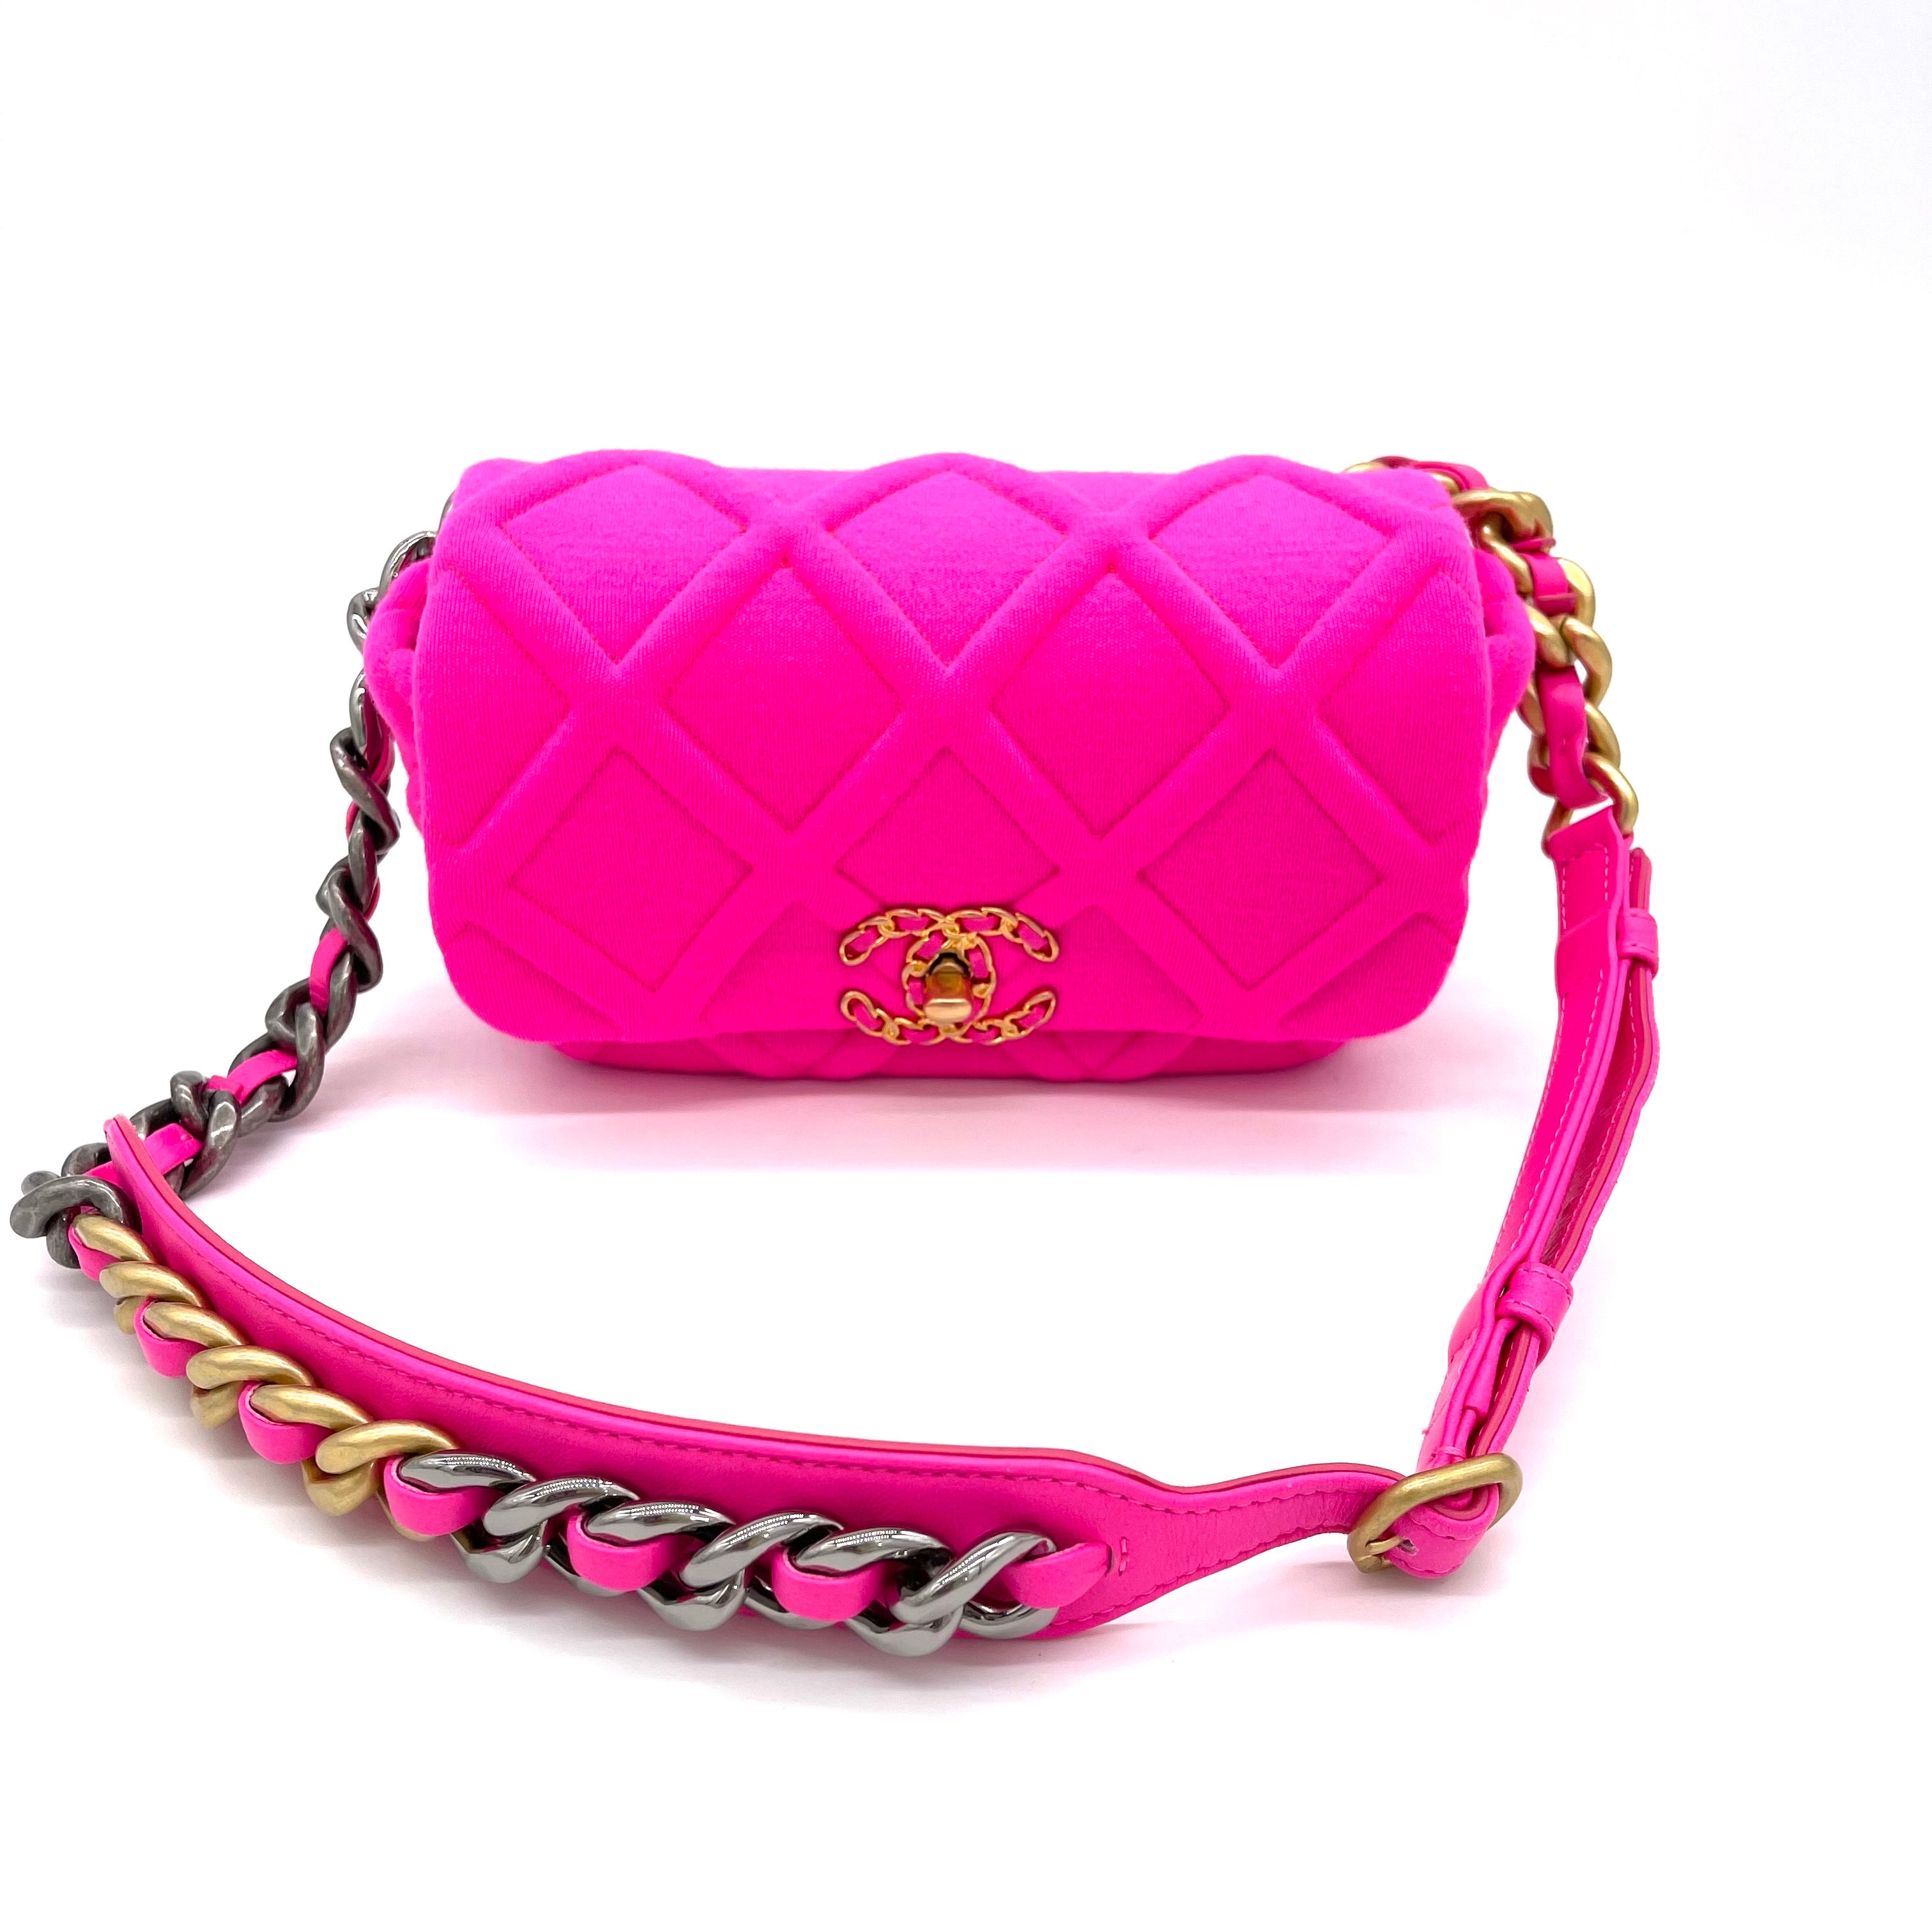 19 Maxi Flap Bag Wool / Jersey Hot Pink